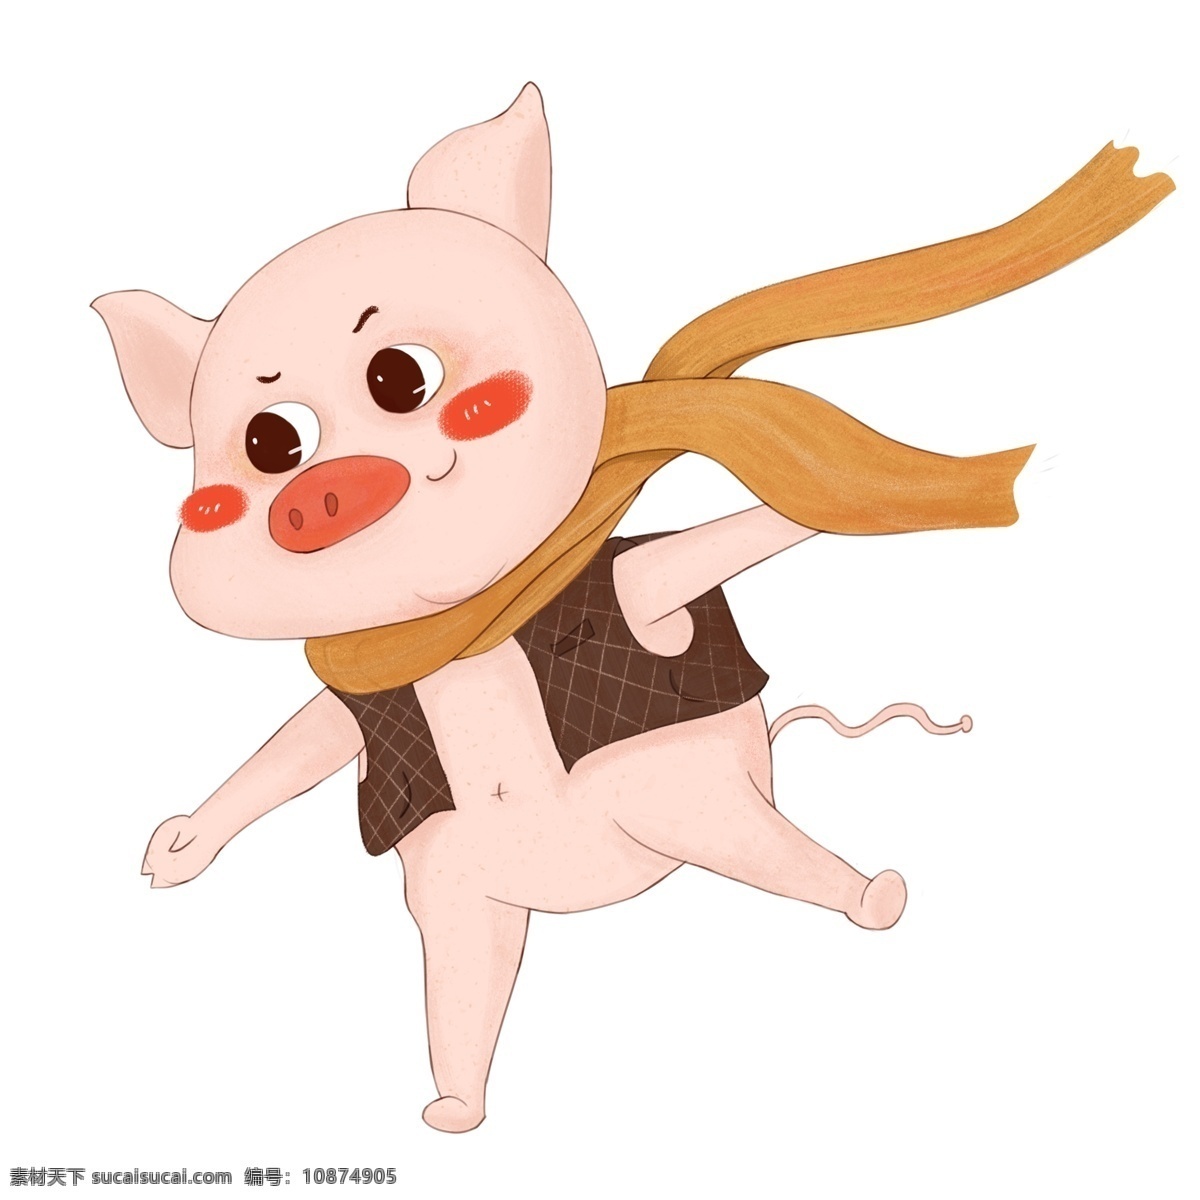 猪年 卡通 小 猪 形象设计 简约 小猪 围巾 插画 猪年形象 开心小猪 猪猪设计